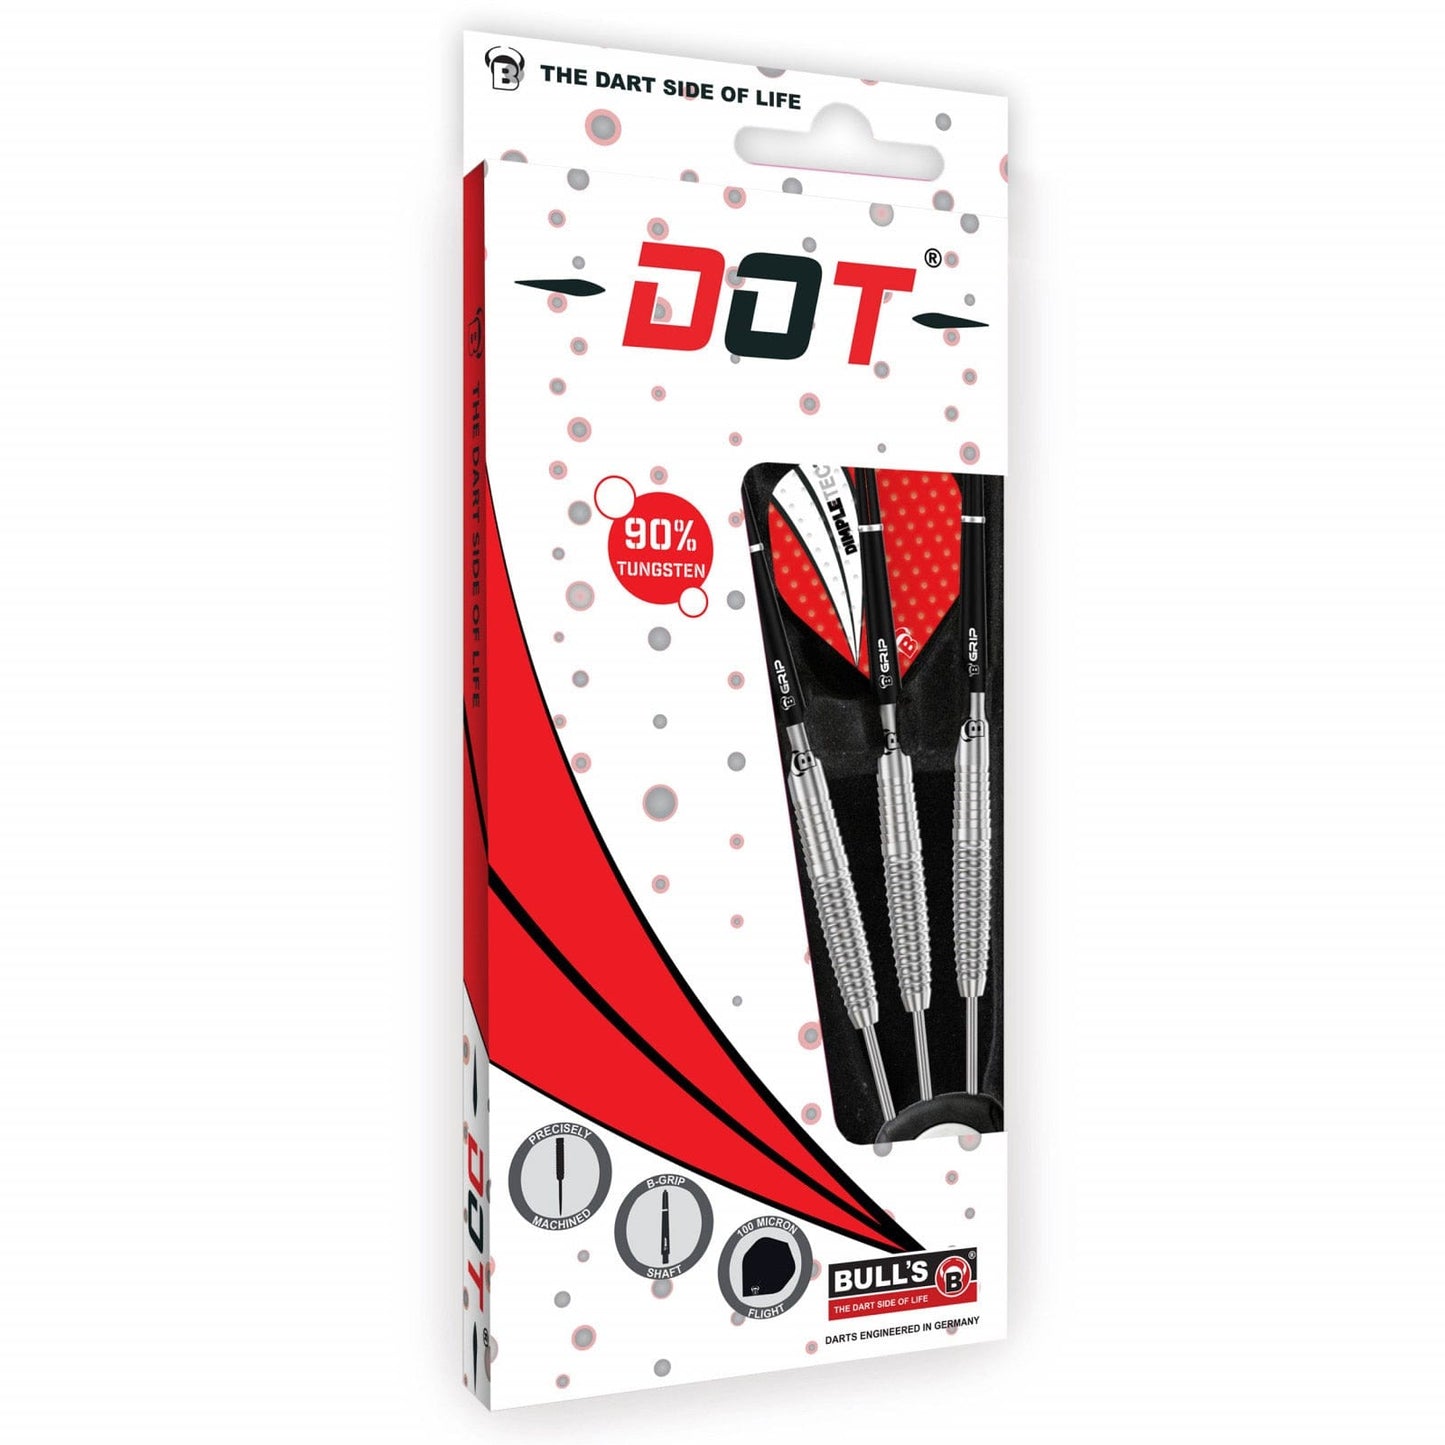 BULL'S Dot D1 Darts - Steel Tip - 90% Tungsten - Rear Shark